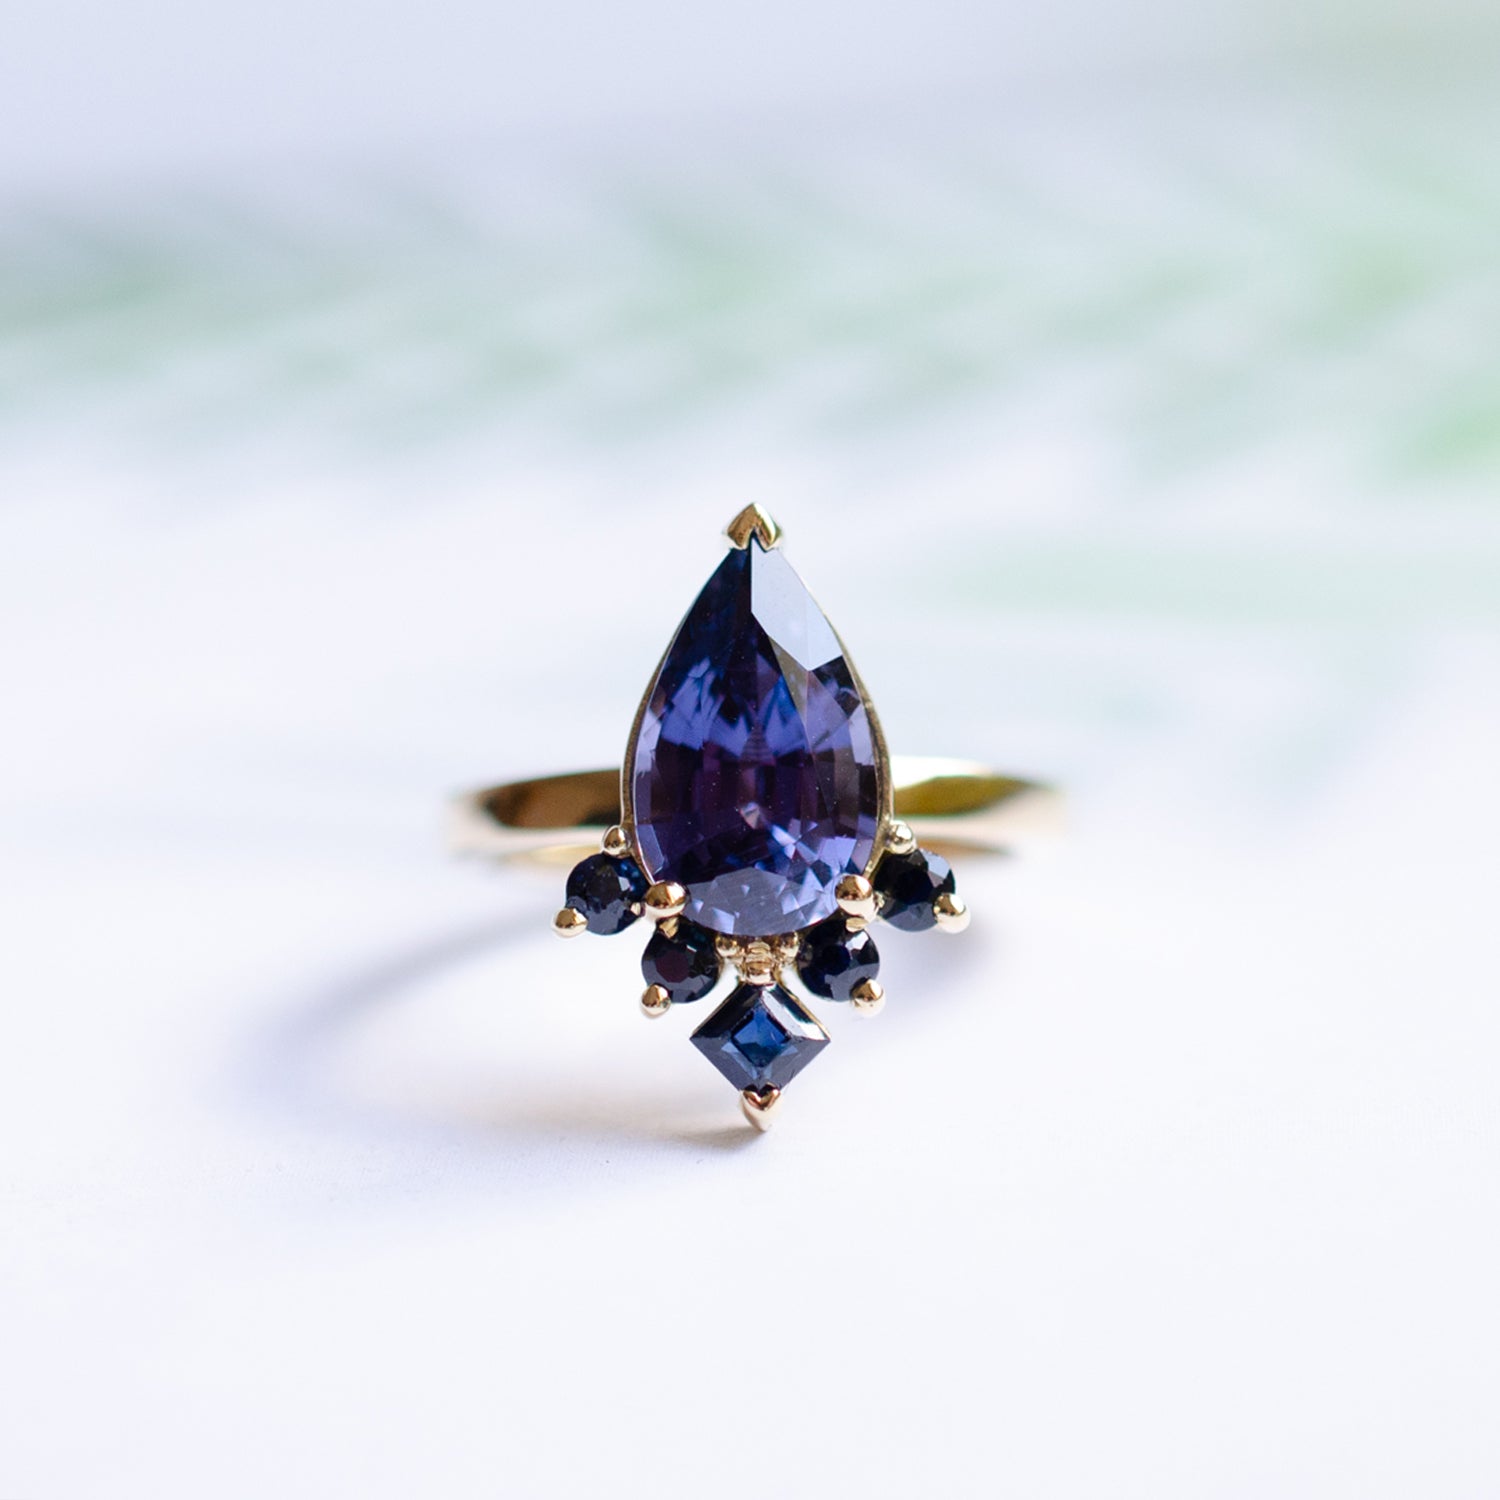 Mei-Li_Rose_bespoke_jewellery_engagement_ring_purple sapphire pear cut stone